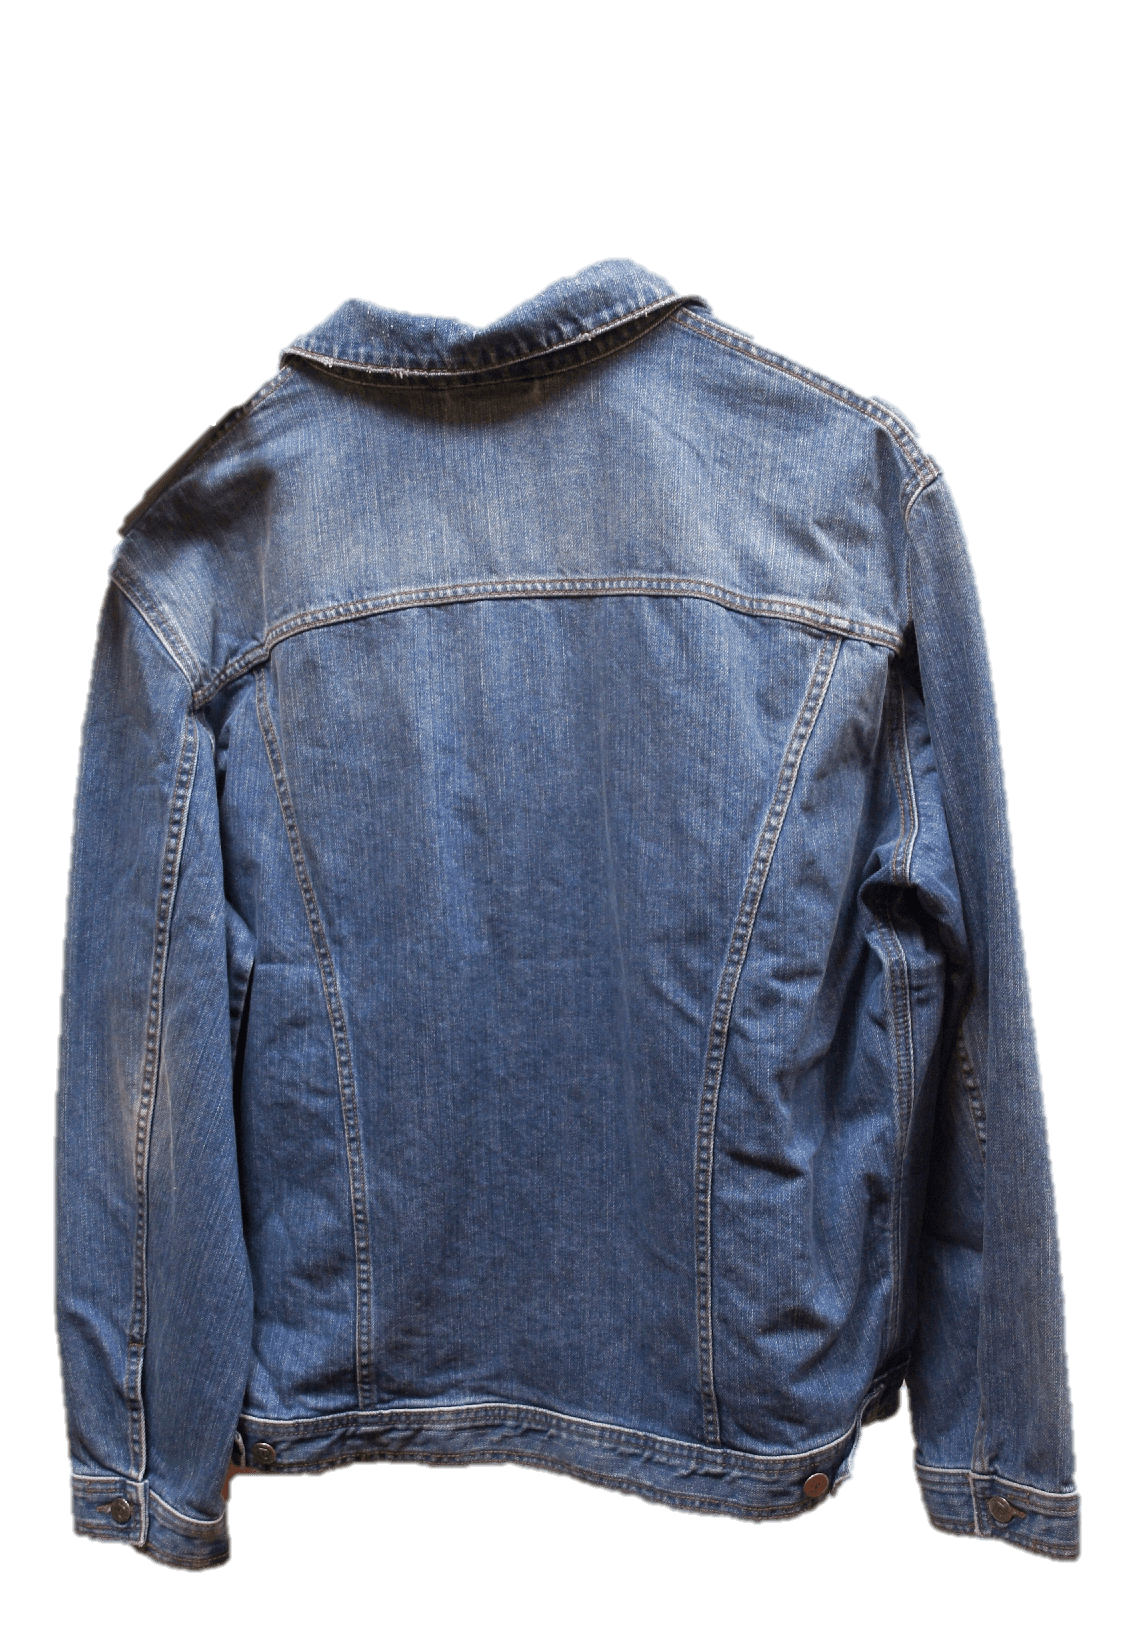 Leather jacket Denim Fur - jacket png download - 1123*1645 - Free ...